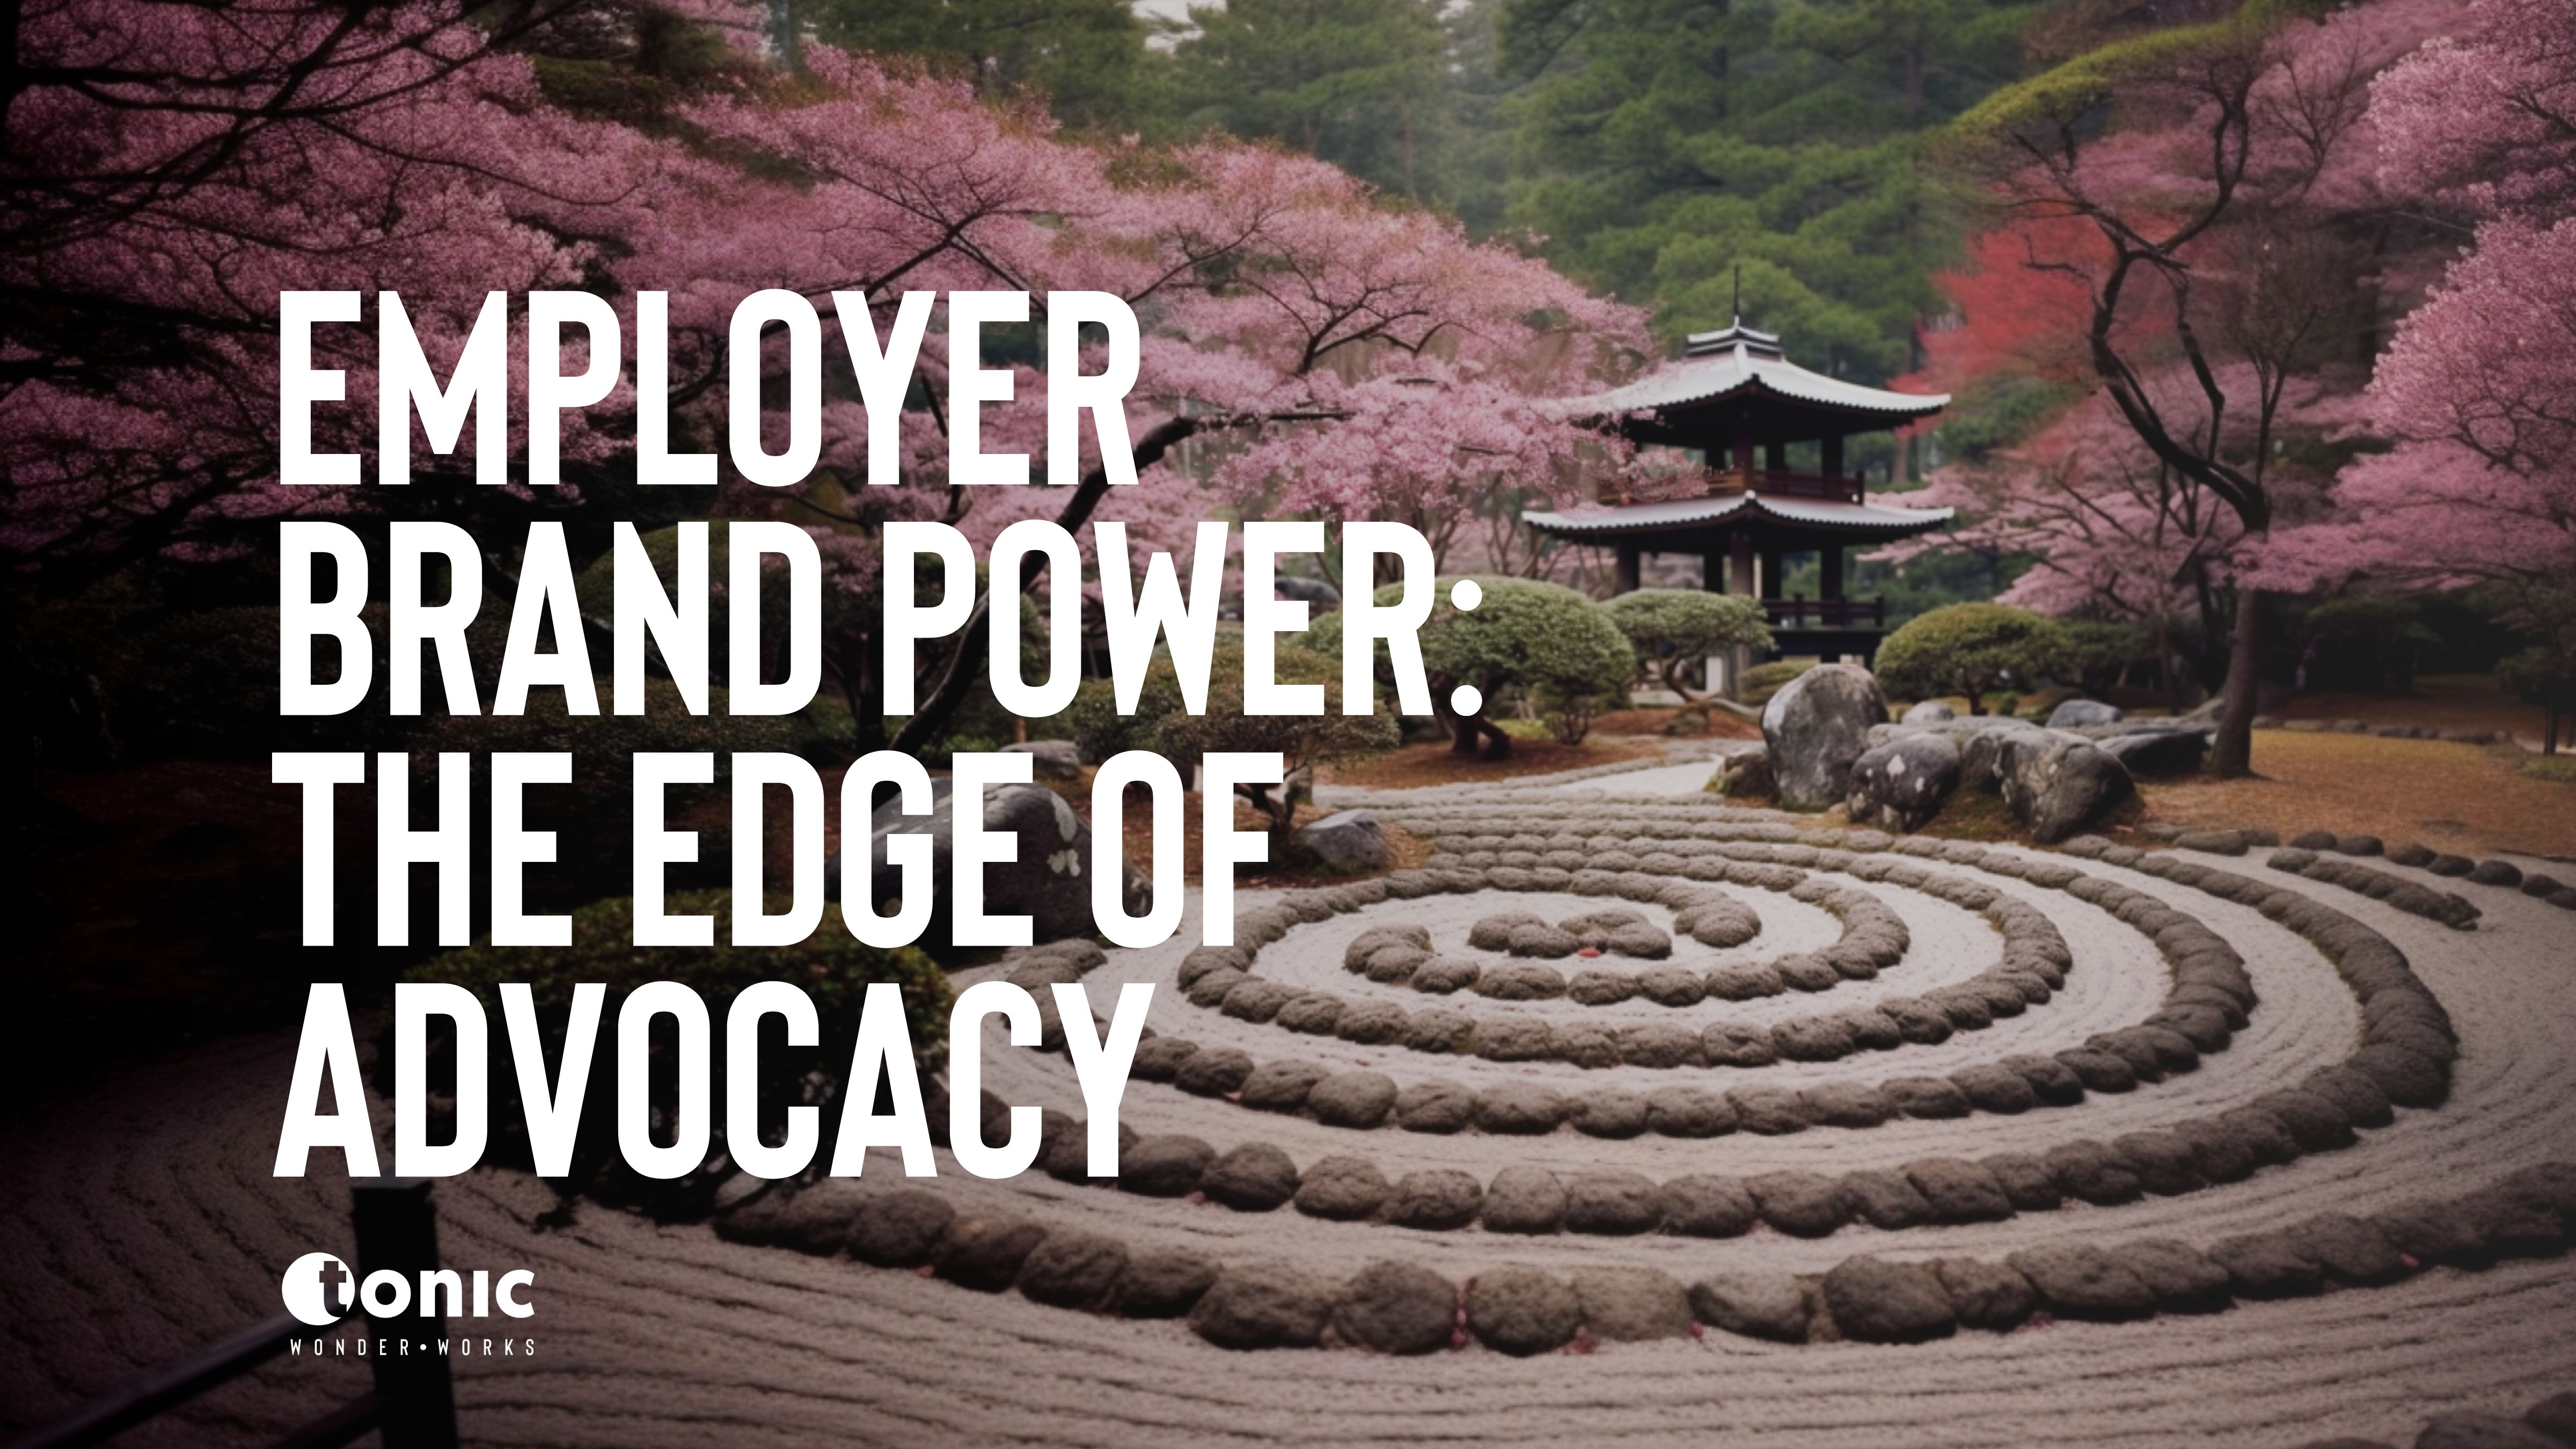 Cover image: A Japanese Pagoda in a zen garden